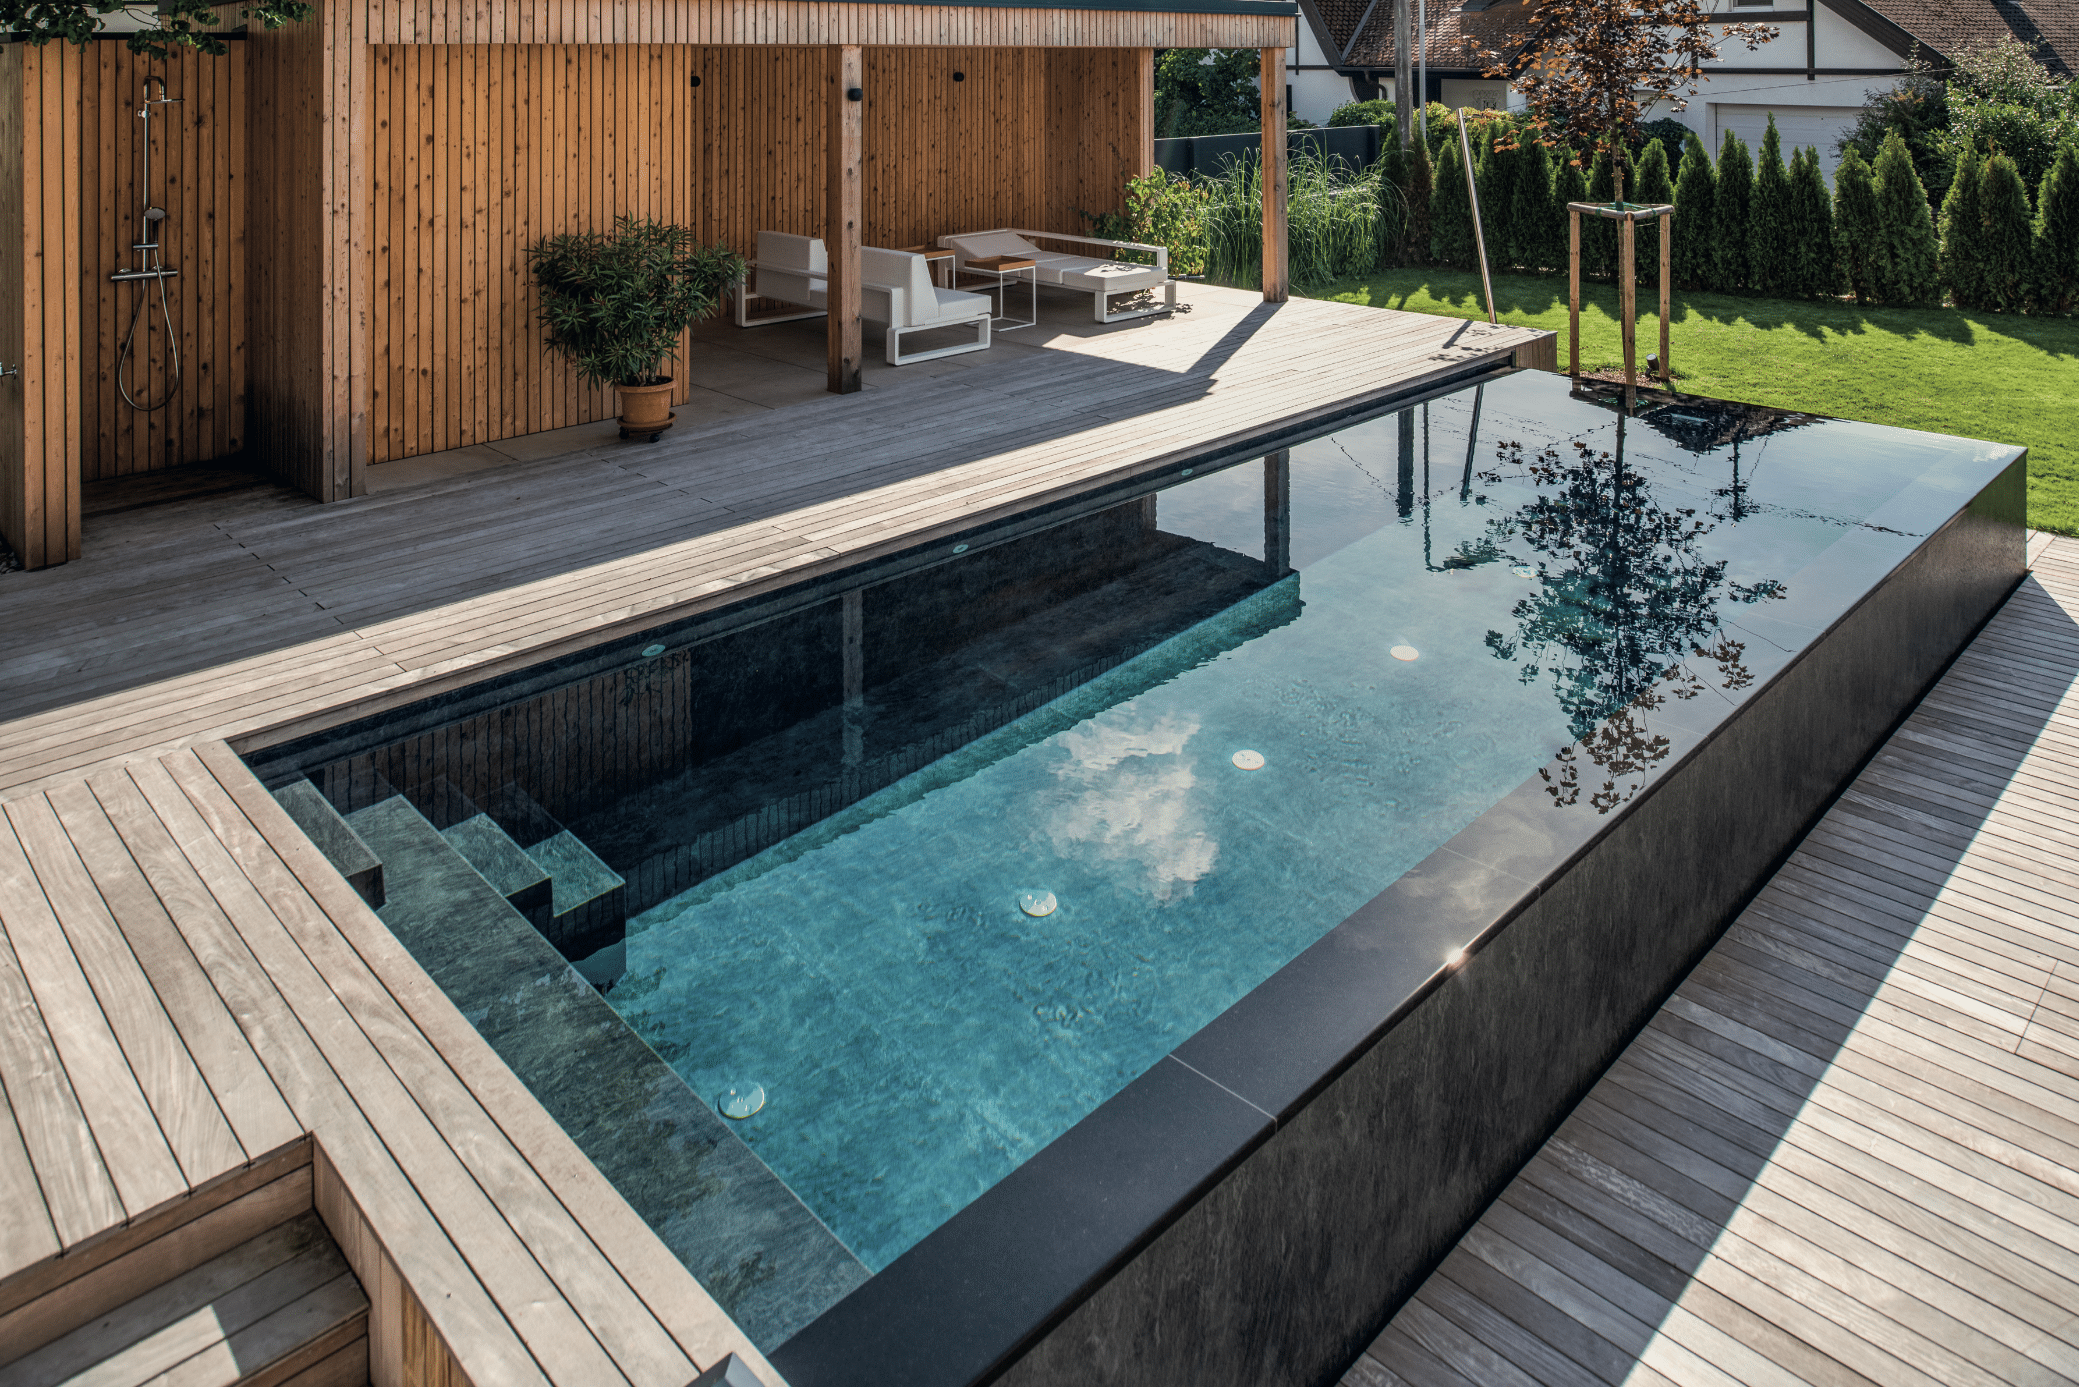 RUHA zeigt einen rechteckigen Infinity Pool mit schwarzem Rand und heller Holzumrandung in einem Garten mit einer Terrasse, überdachter Sitzlounge mit gemütlichen Loungemöbeln.